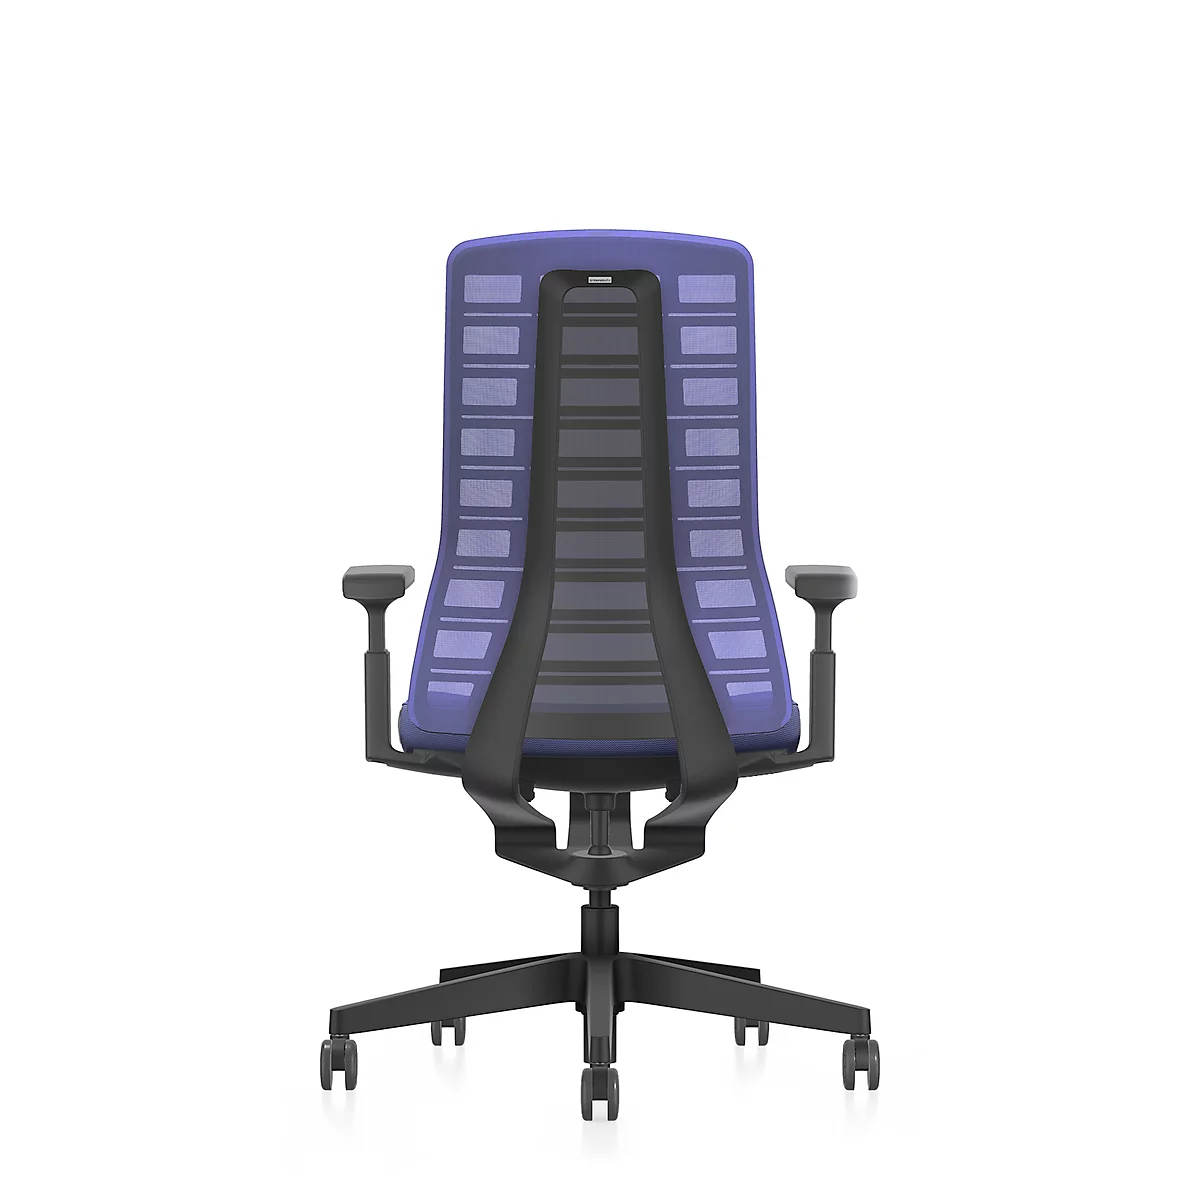 Interstuhl Bürostuhl PUREis3, verstellbare Armlehnen, 3D-Auto-Synchronmechanik, Muldensitz, Netzrücken, kobaltblau/schwarz